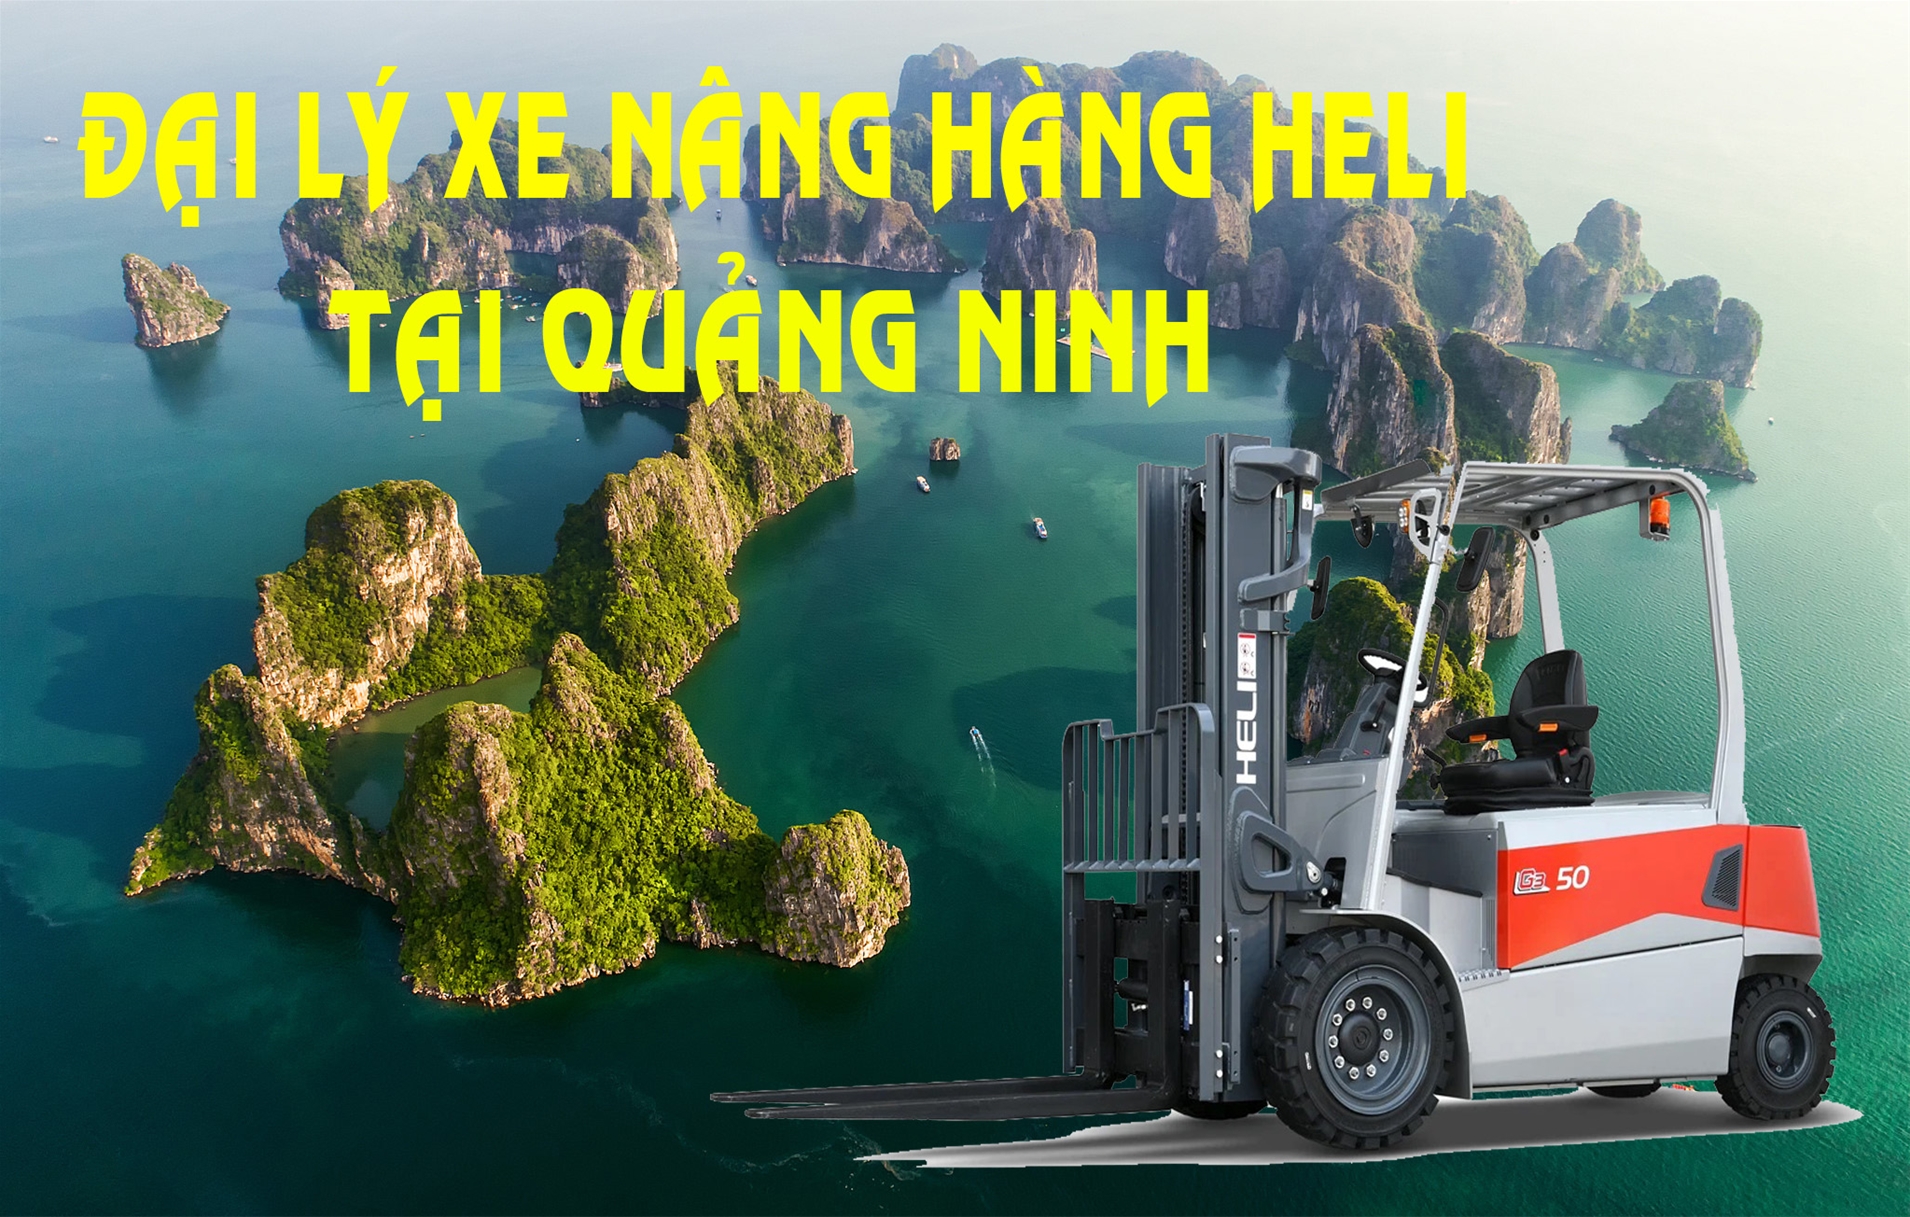 Đại lý bán xe nâng và cho thuê xe nâng tại Quảng Ninh